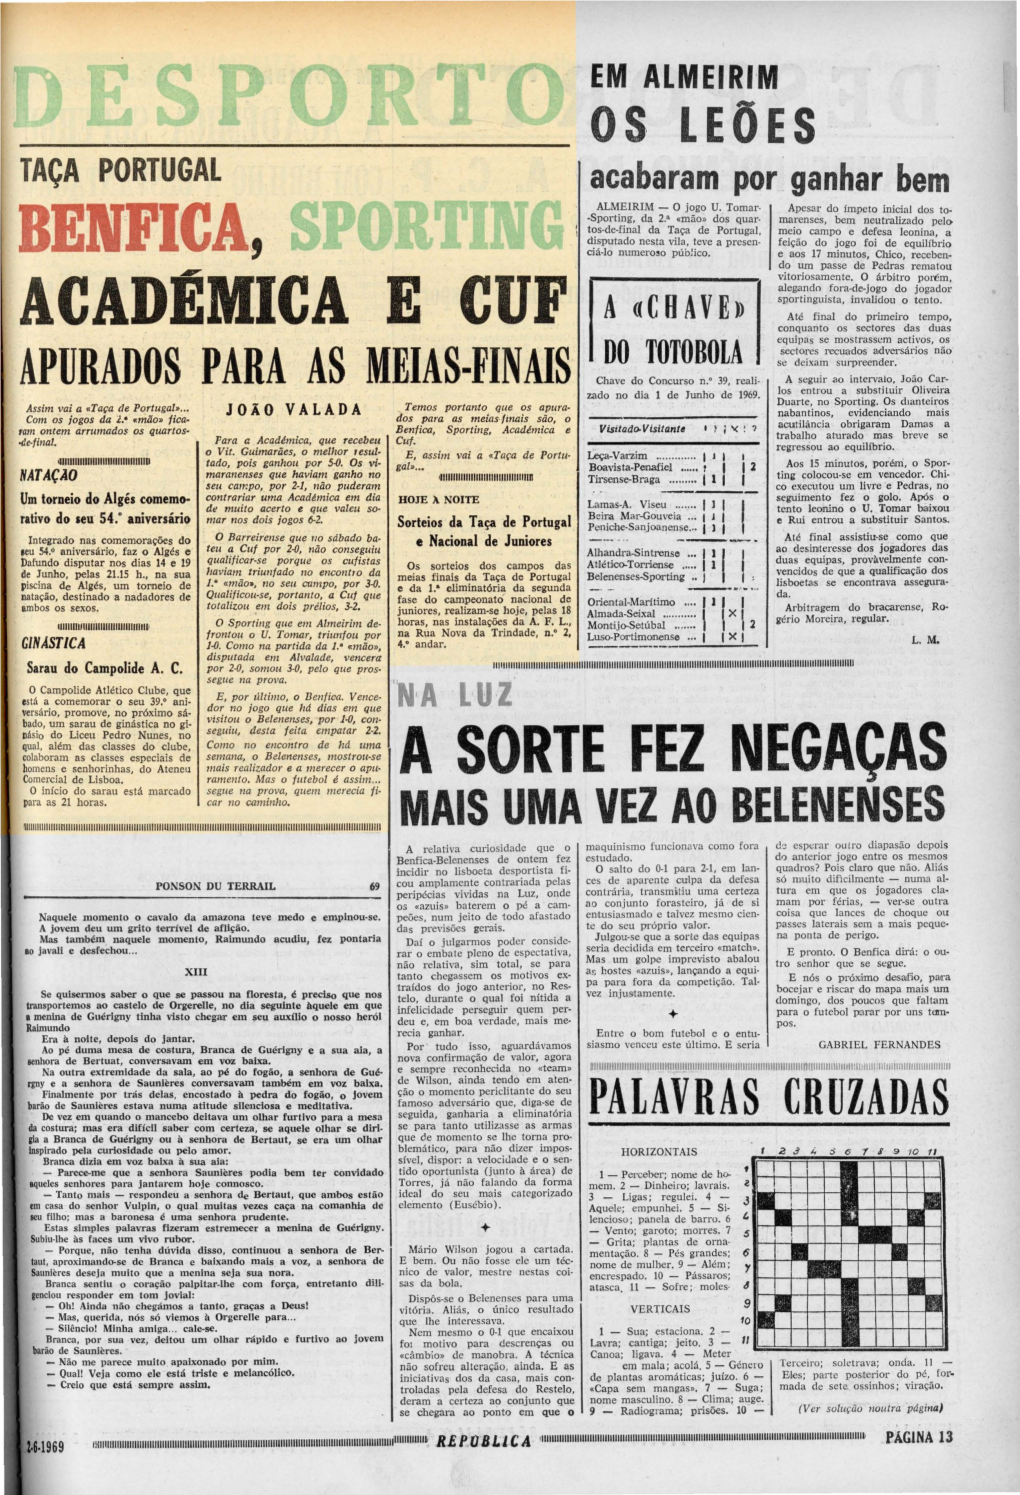 Taça Portugal Benfica, Port N Acadêmica E